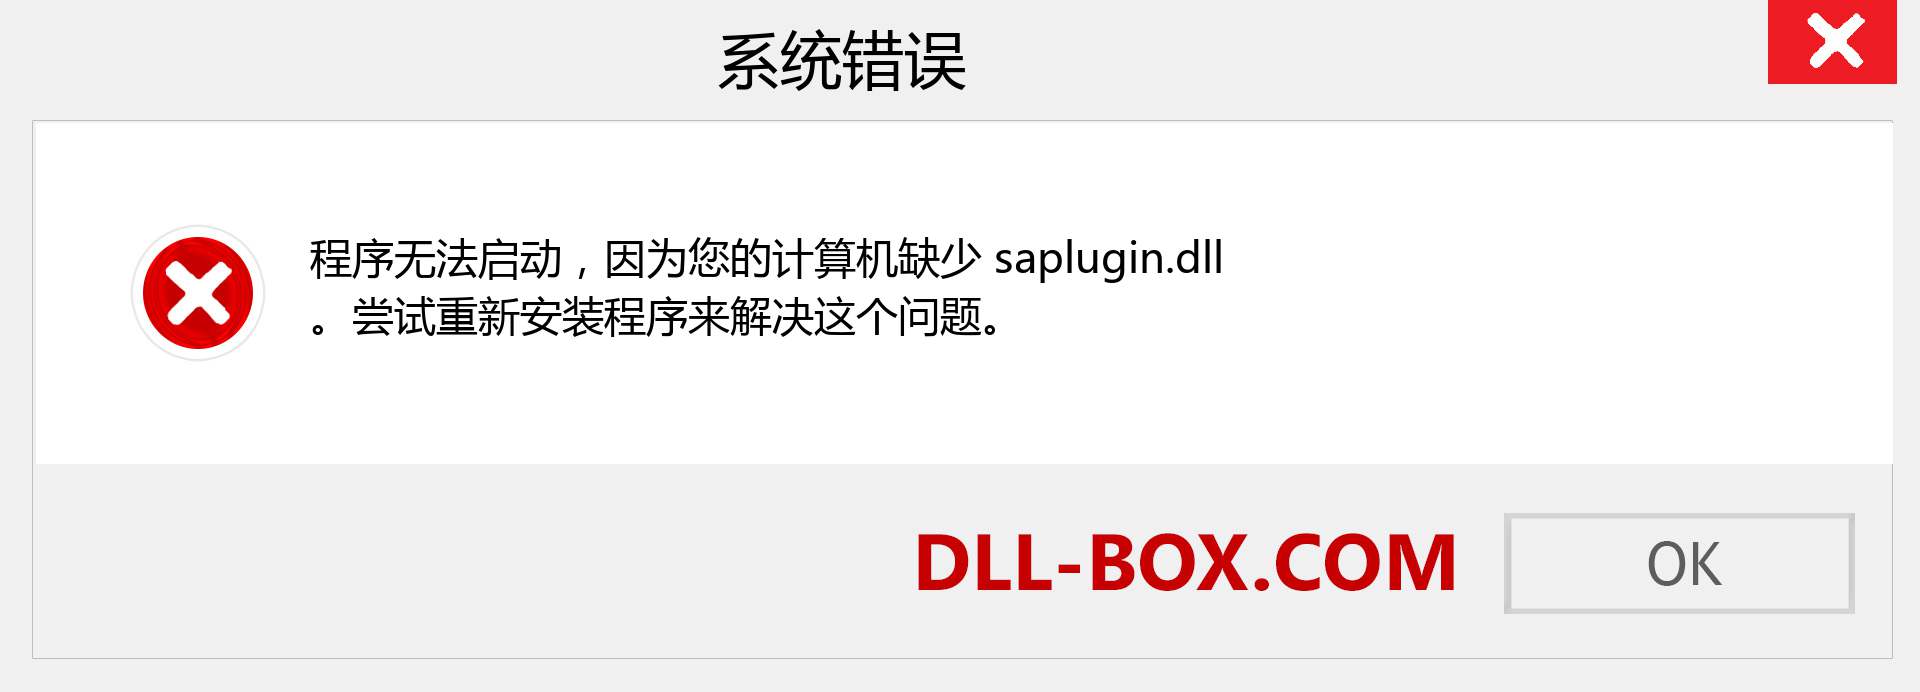 saplugin.dll 文件丢失？。 适用于 Windows 7、8、10 的下载 - 修复 Windows、照片、图像上的 saplugin dll 丢失错误